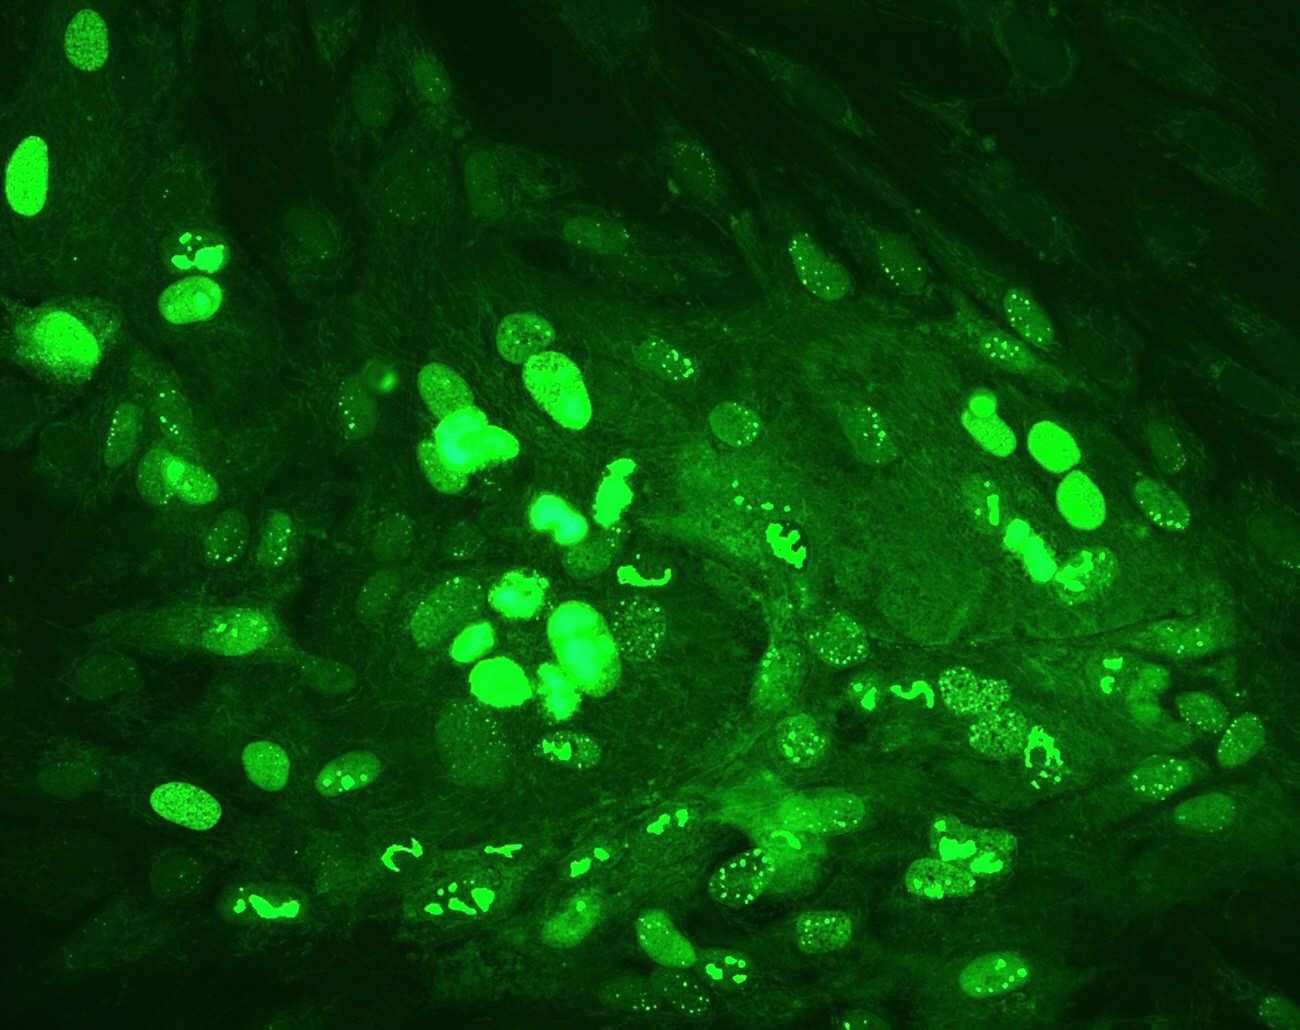 Fluorescent Antibody Test- An Effective Diagnostic Technique